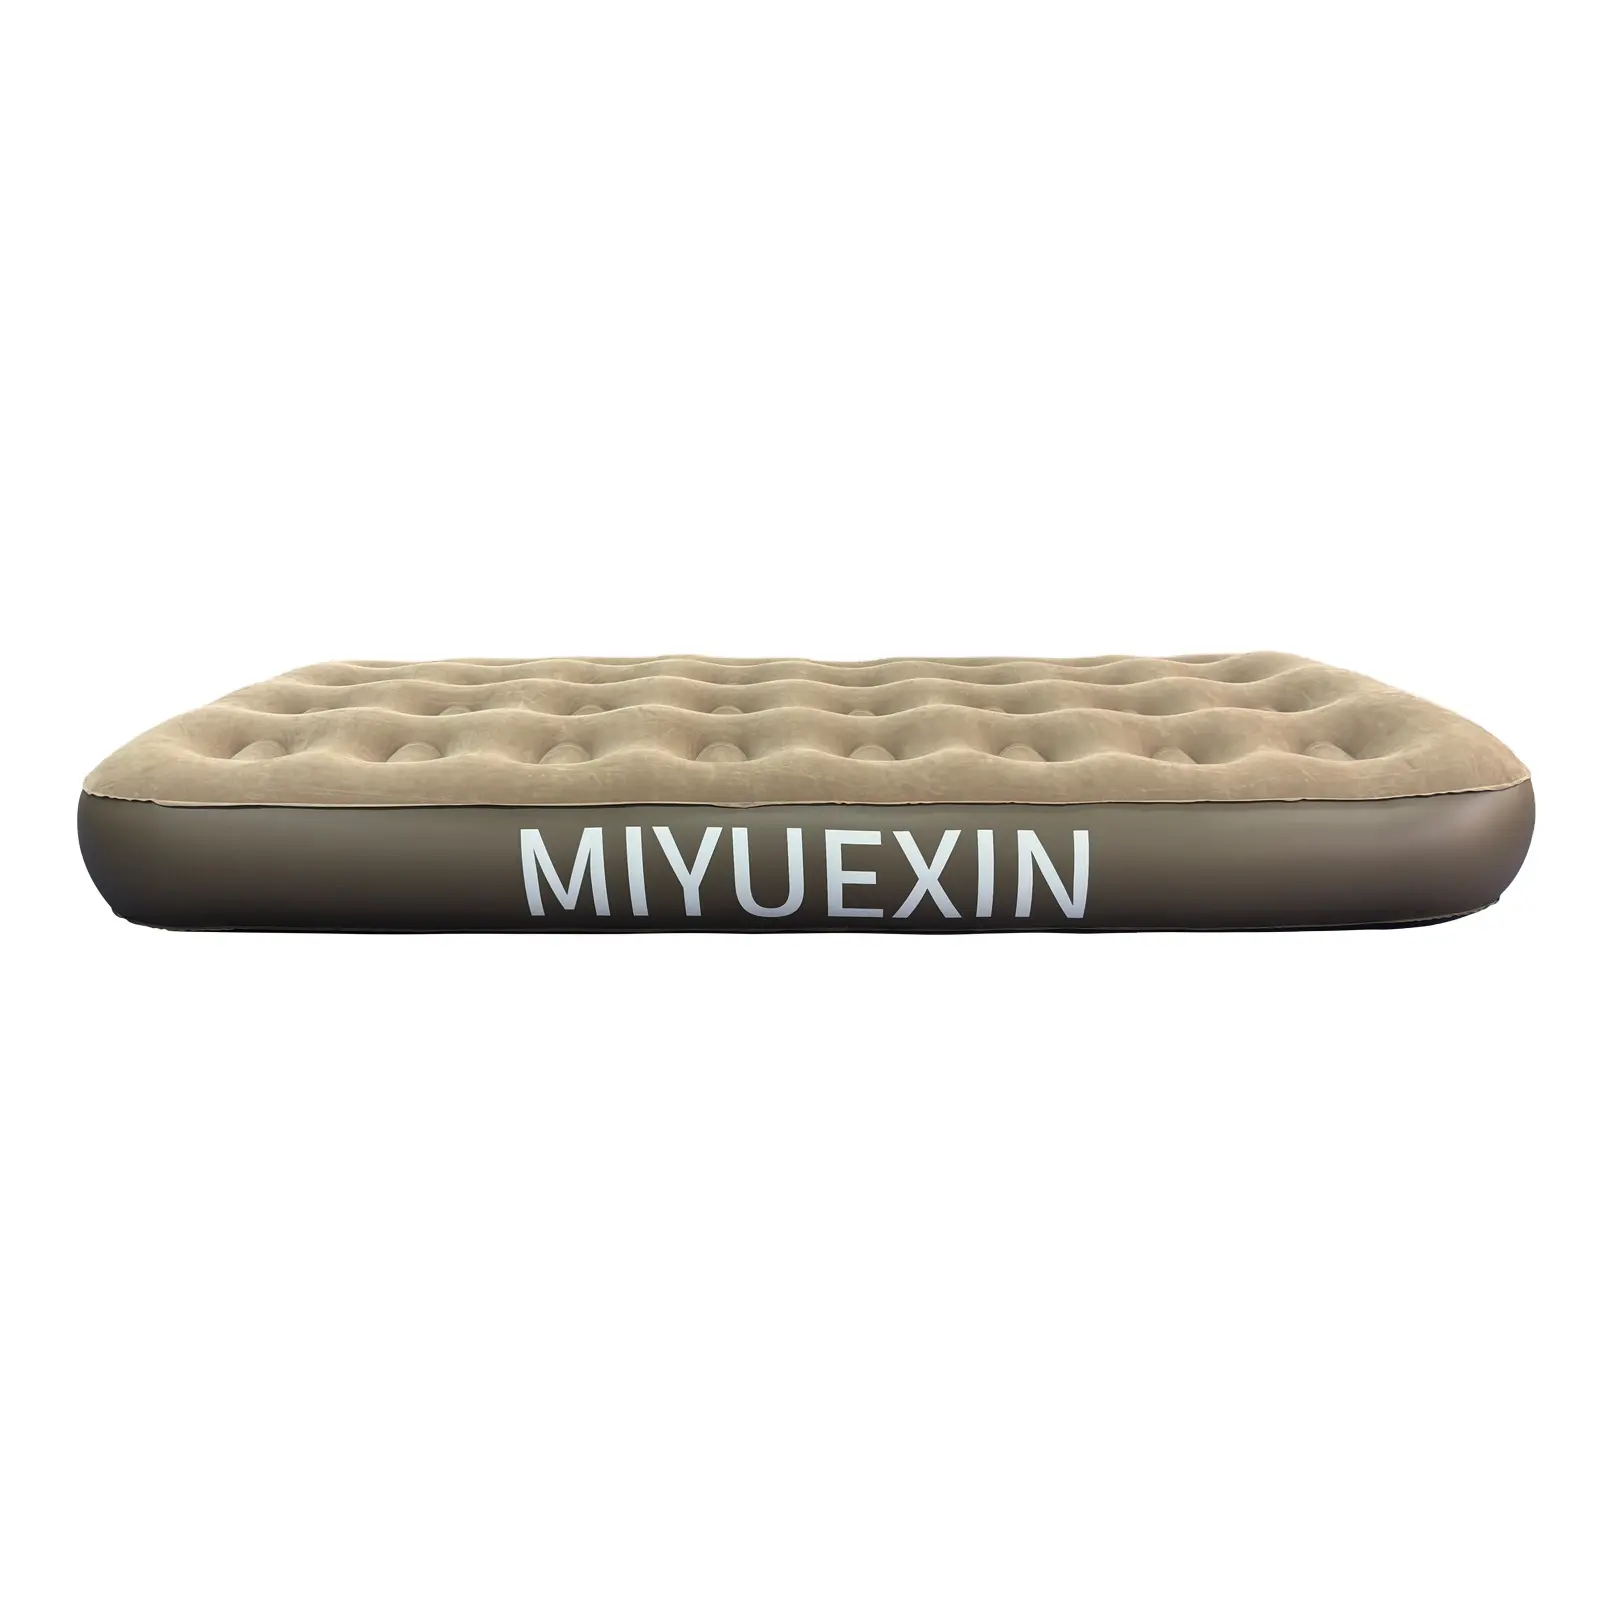 مرتبة مياوكسين MIYUEXIN مرتبة هوائية قابلة للطي وسرير قابل للنفخ لغرفة النوم وغرفة المعيشة والحديقة للاستخدام الخارجي كأثاث منزلي